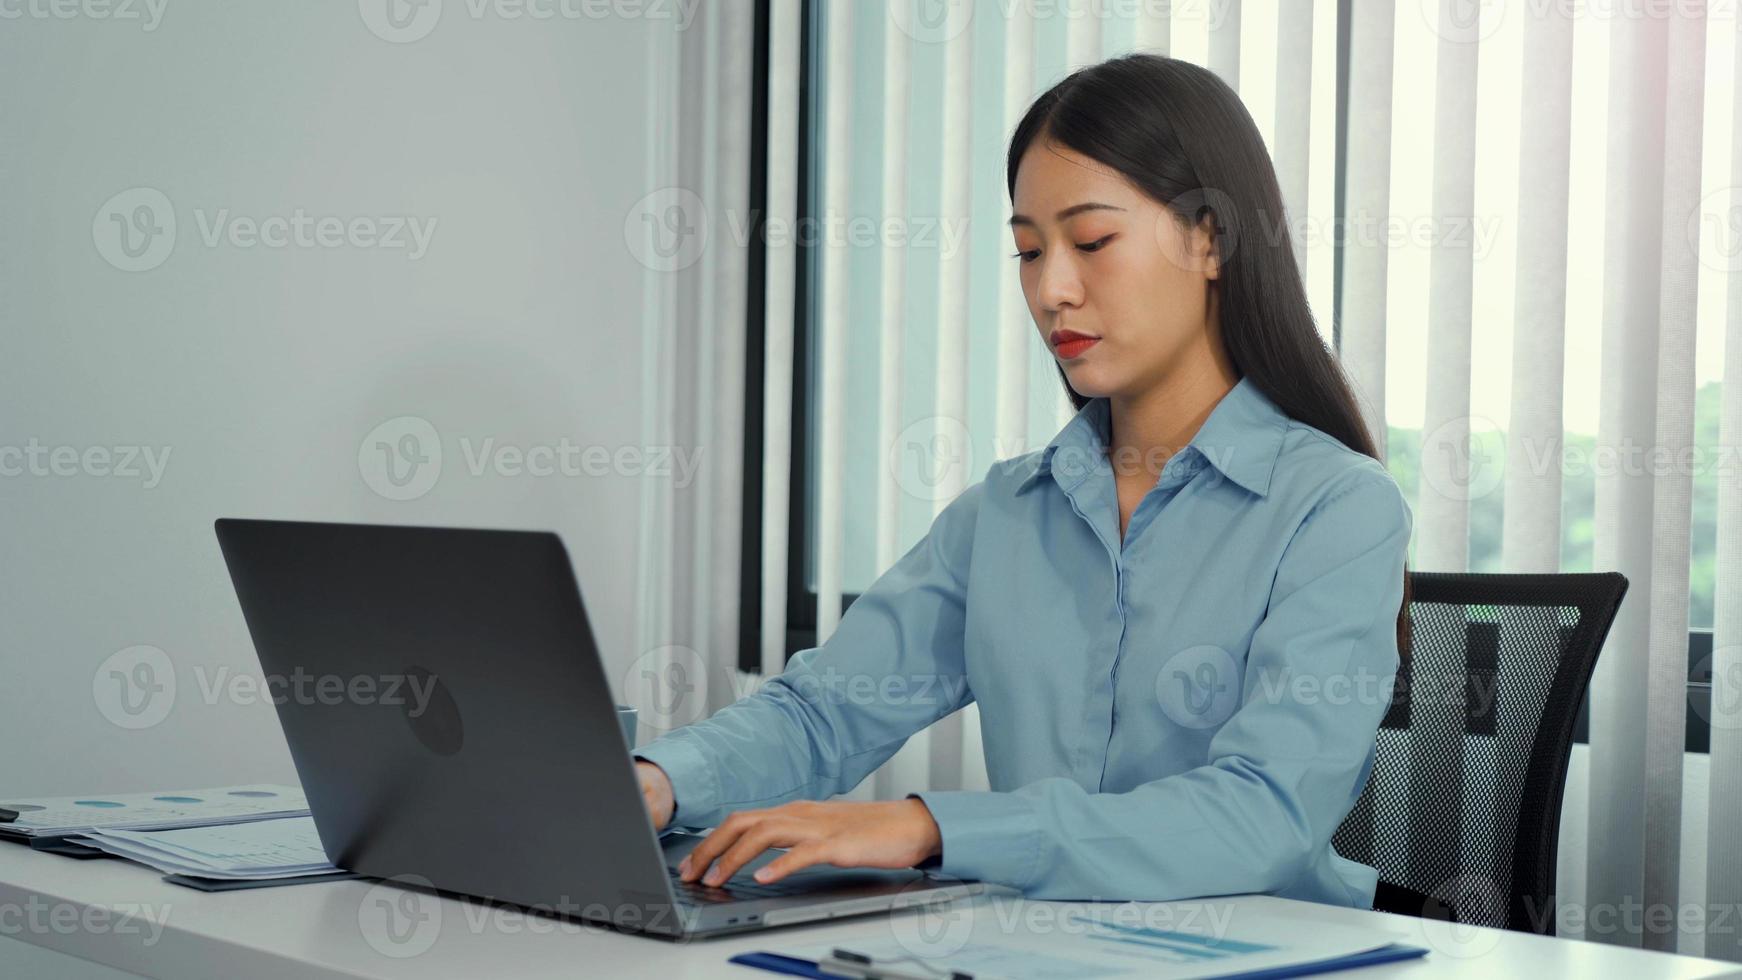 aziatische vrouwen werken serieus op een laptop en hebben een serieuze houding op kantoor. foto